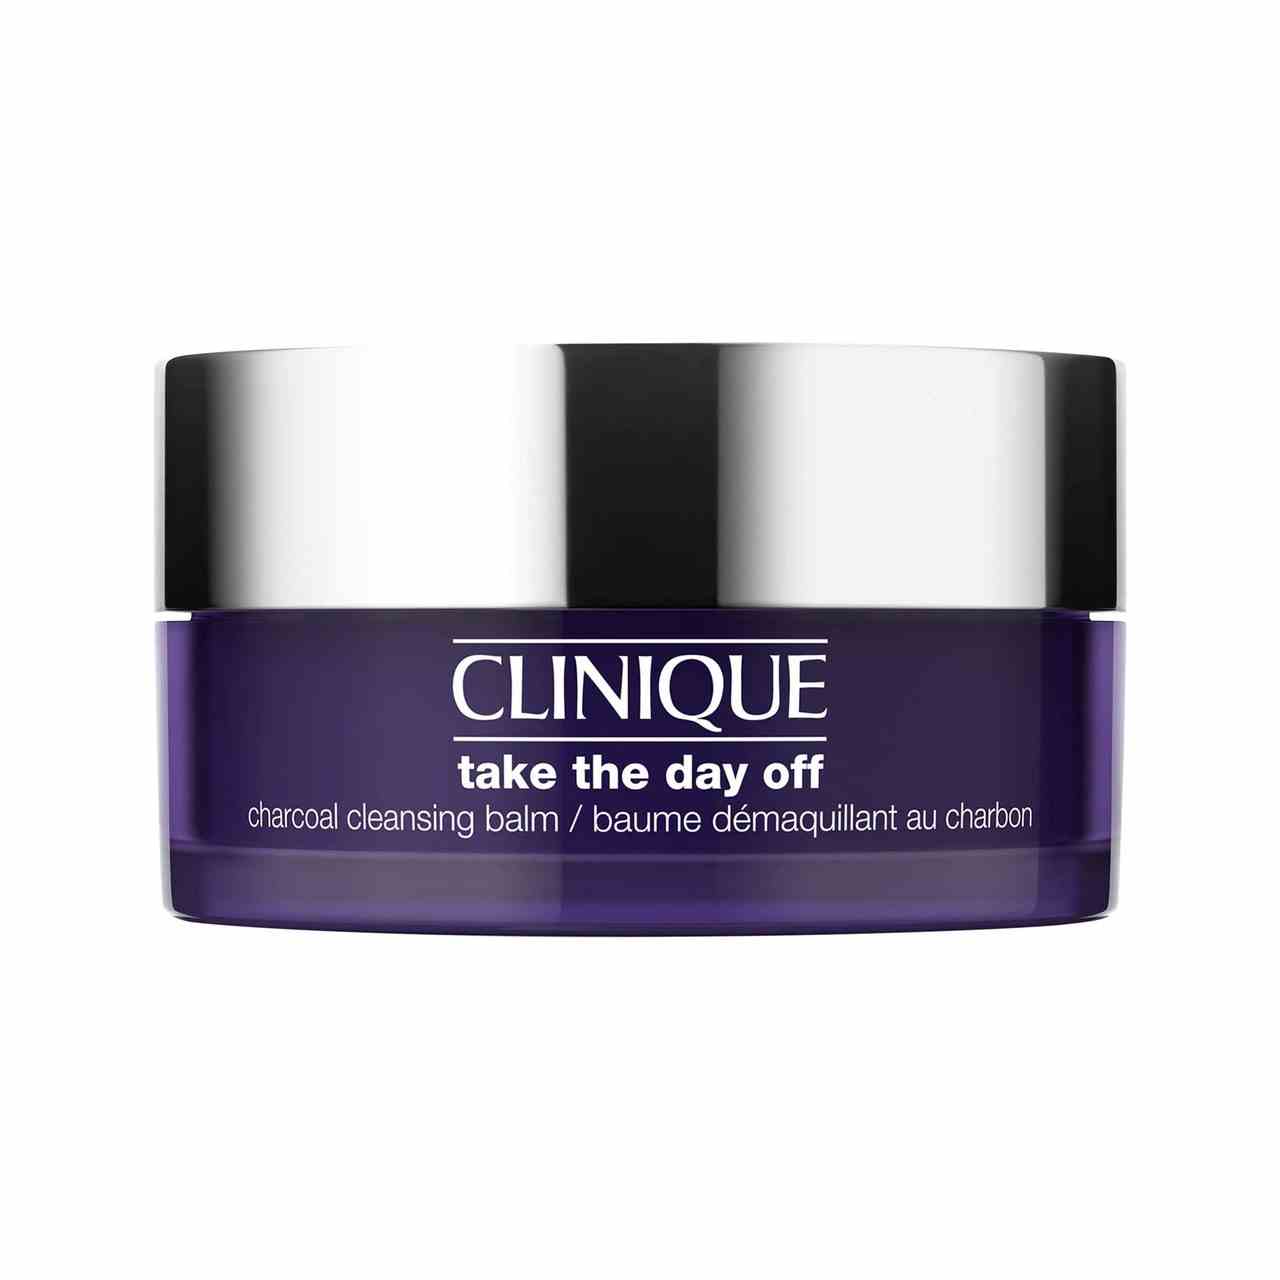 Clinique Take The Day Off Charcoal Cleansing Balm dunkelviolettes Glas mit silbernem Deckel auf weißem Hintergrund